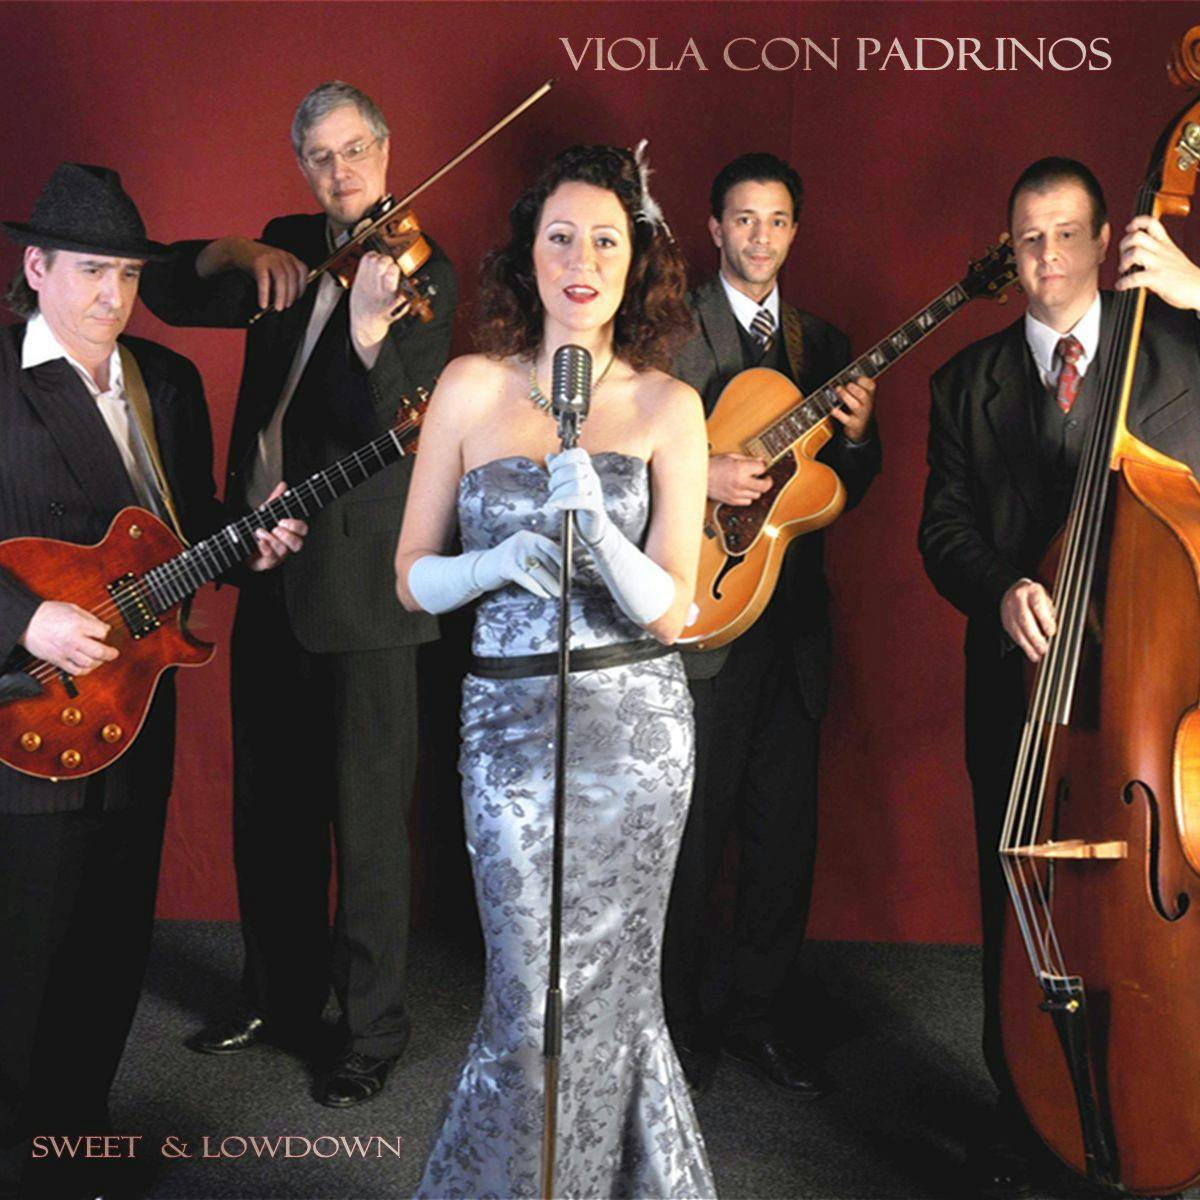 Jazzband Viola con Padrinos